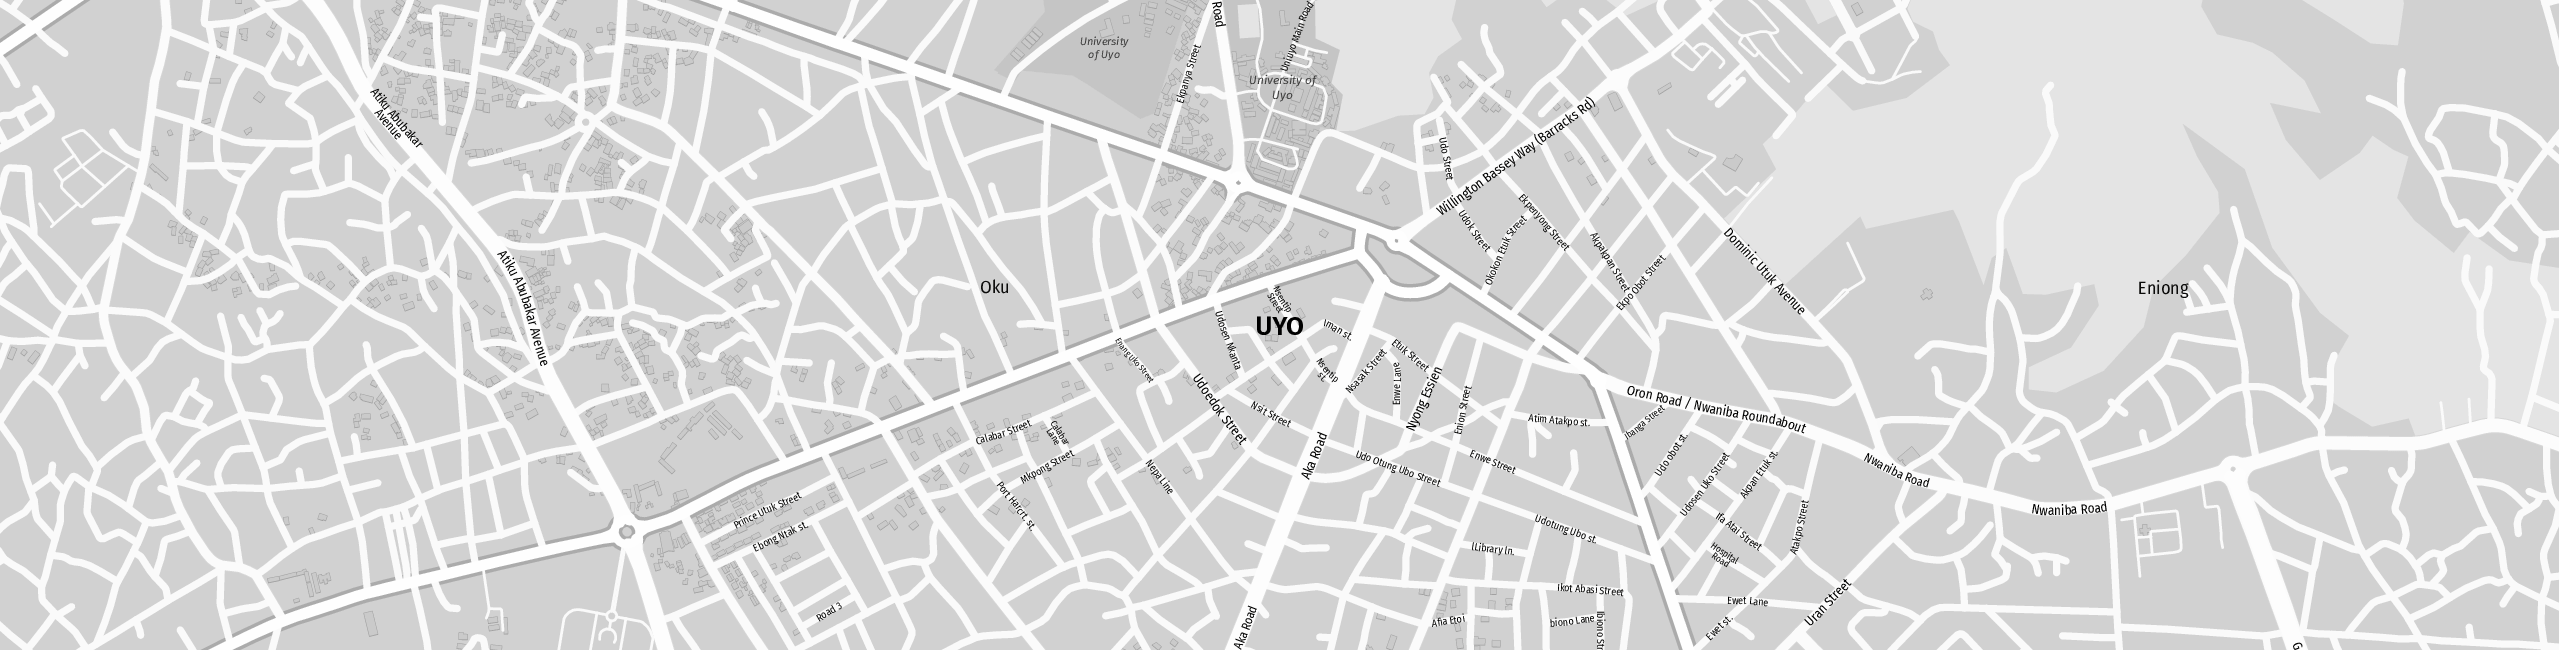 Stadtplan Uyo zum Downloaden.